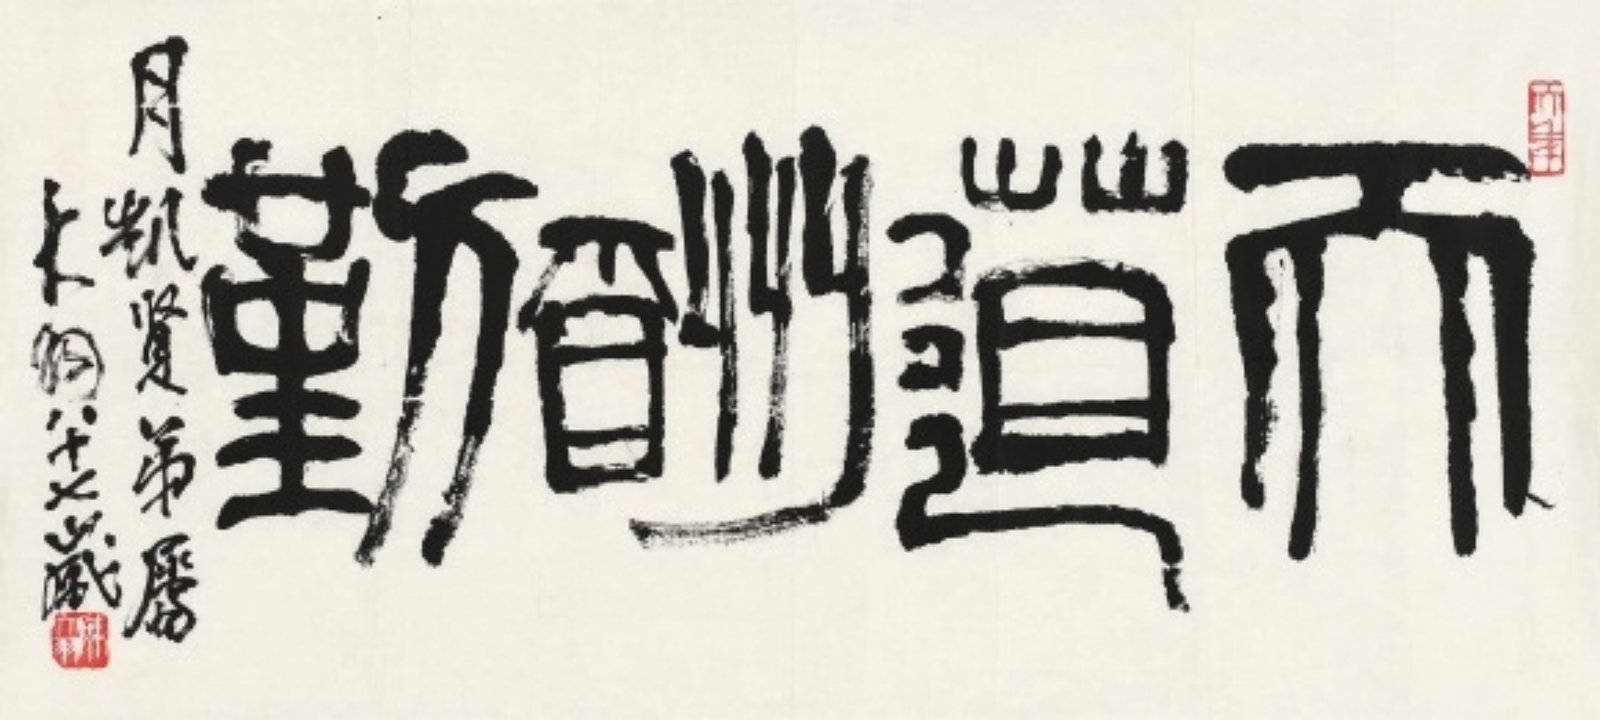 Le ciel récompense ceux qui travaillent dur, encre sur papier, Chen Dayu (chinois, 1912-2001)